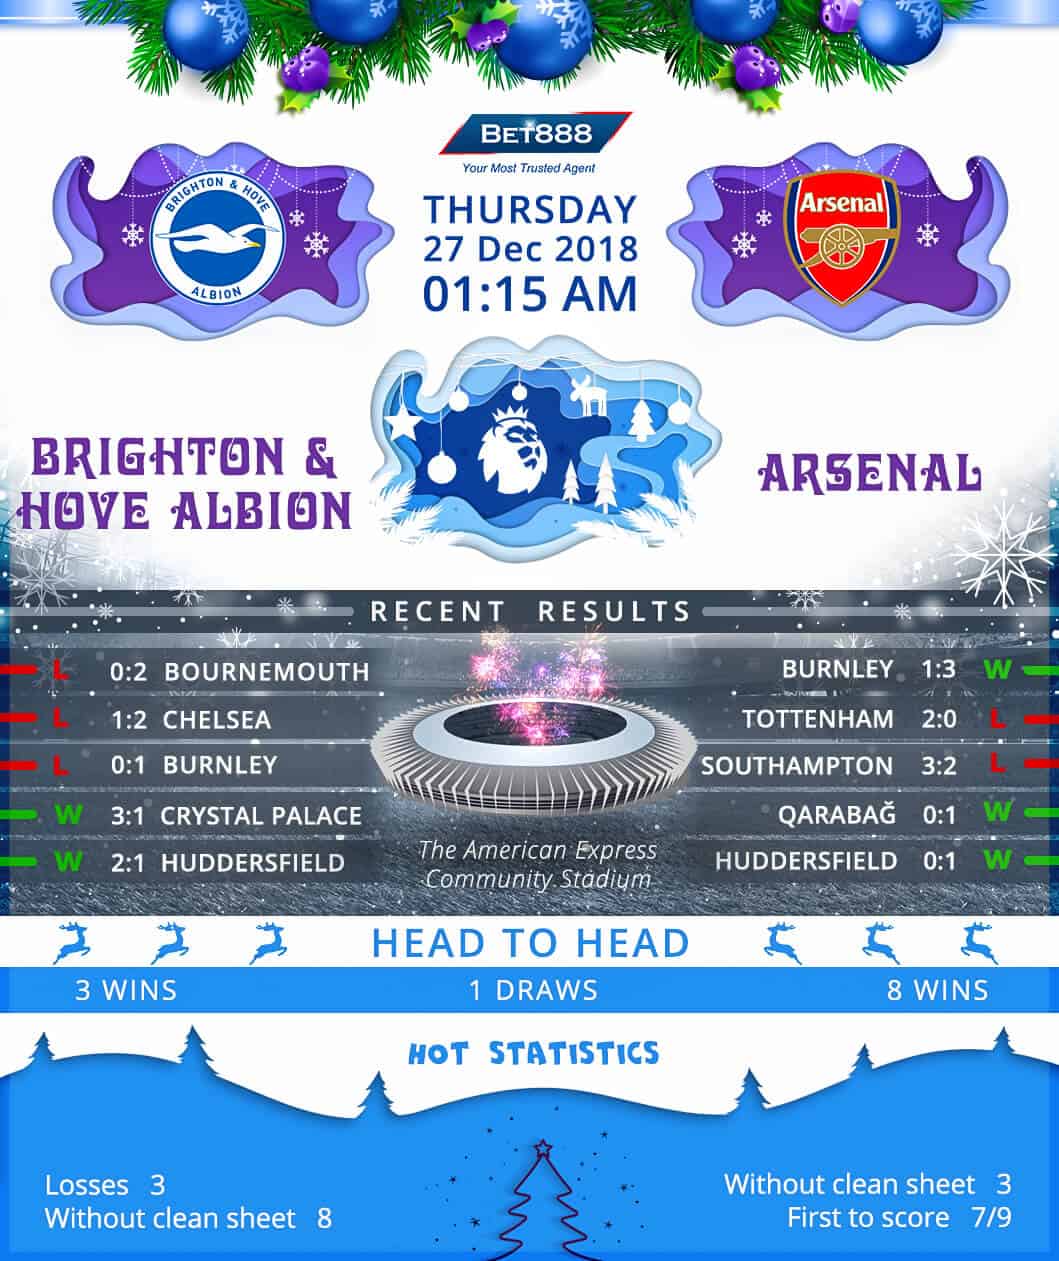 Brighton & Hove Albion vs Arsenal 27/12/18